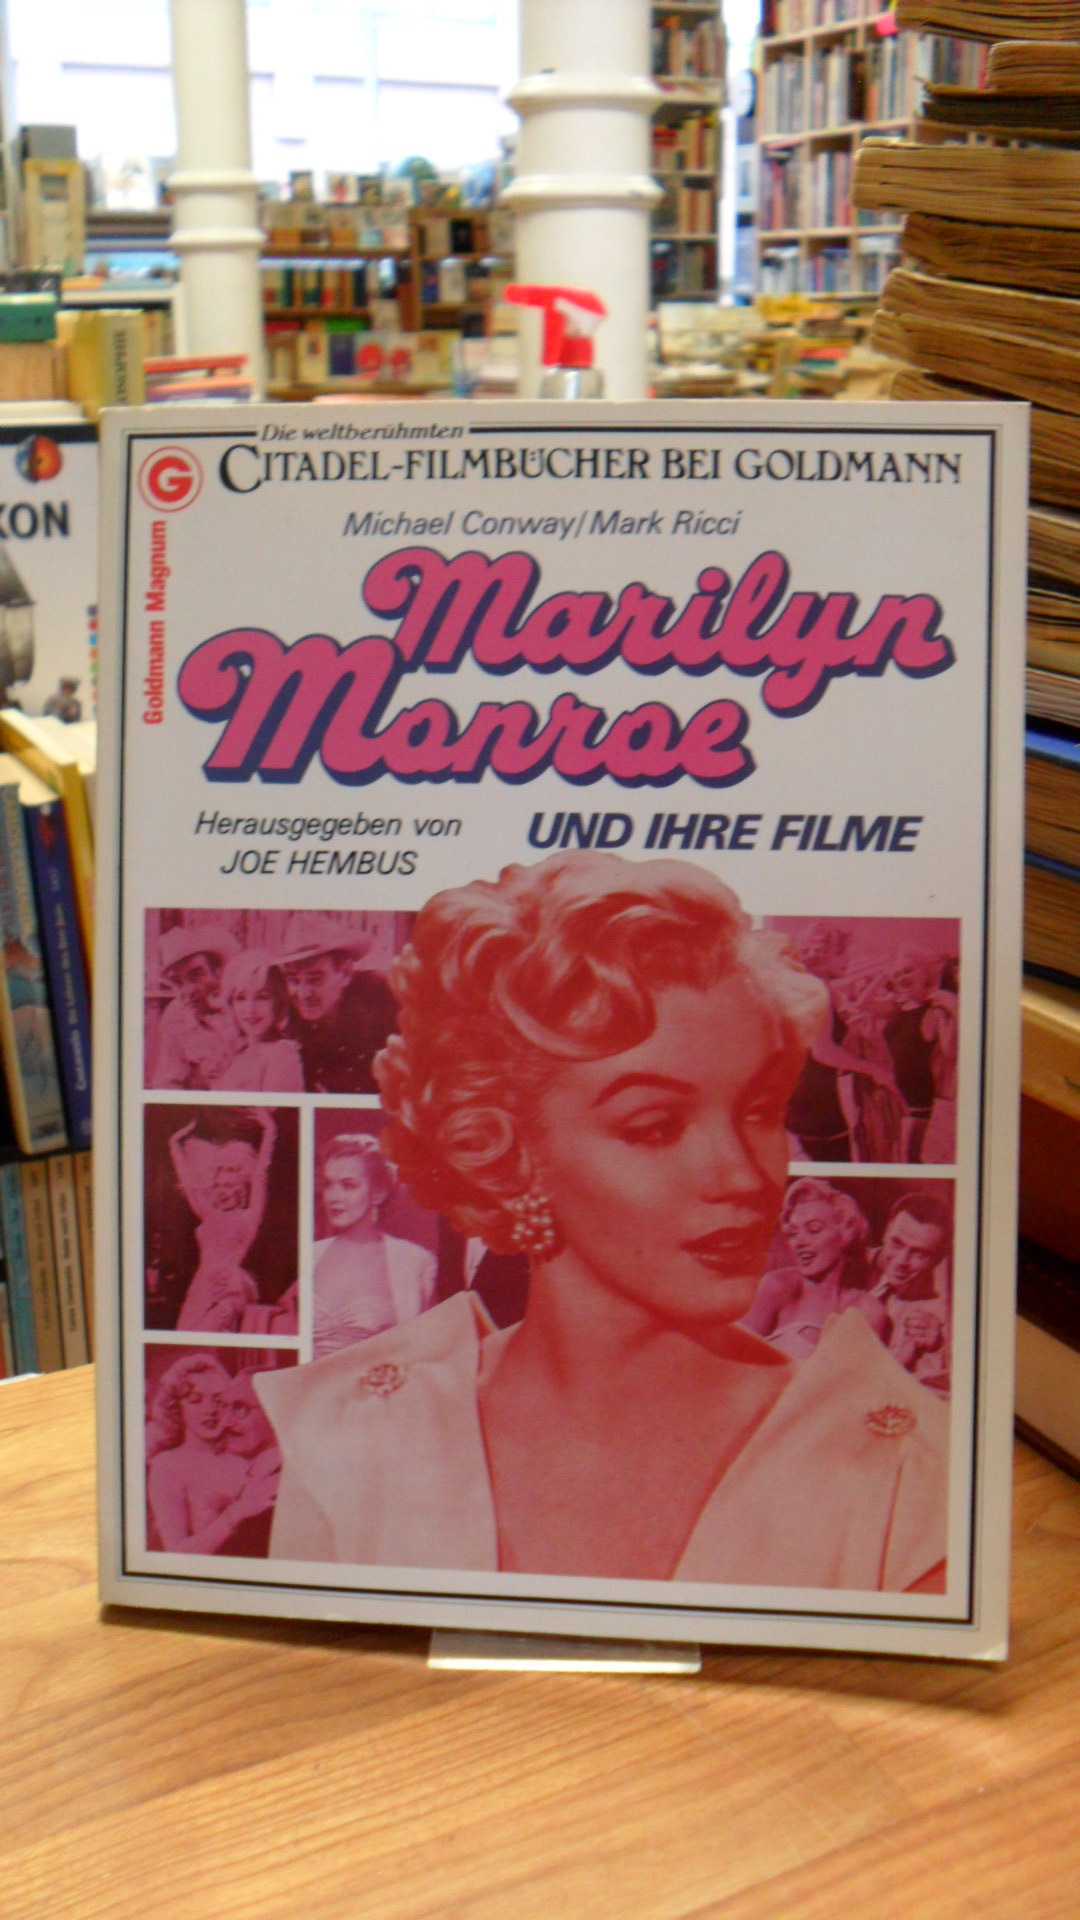 Conway, Marilyn Monroe und ihre Filme – Herausgegeben von Joe Hembus,